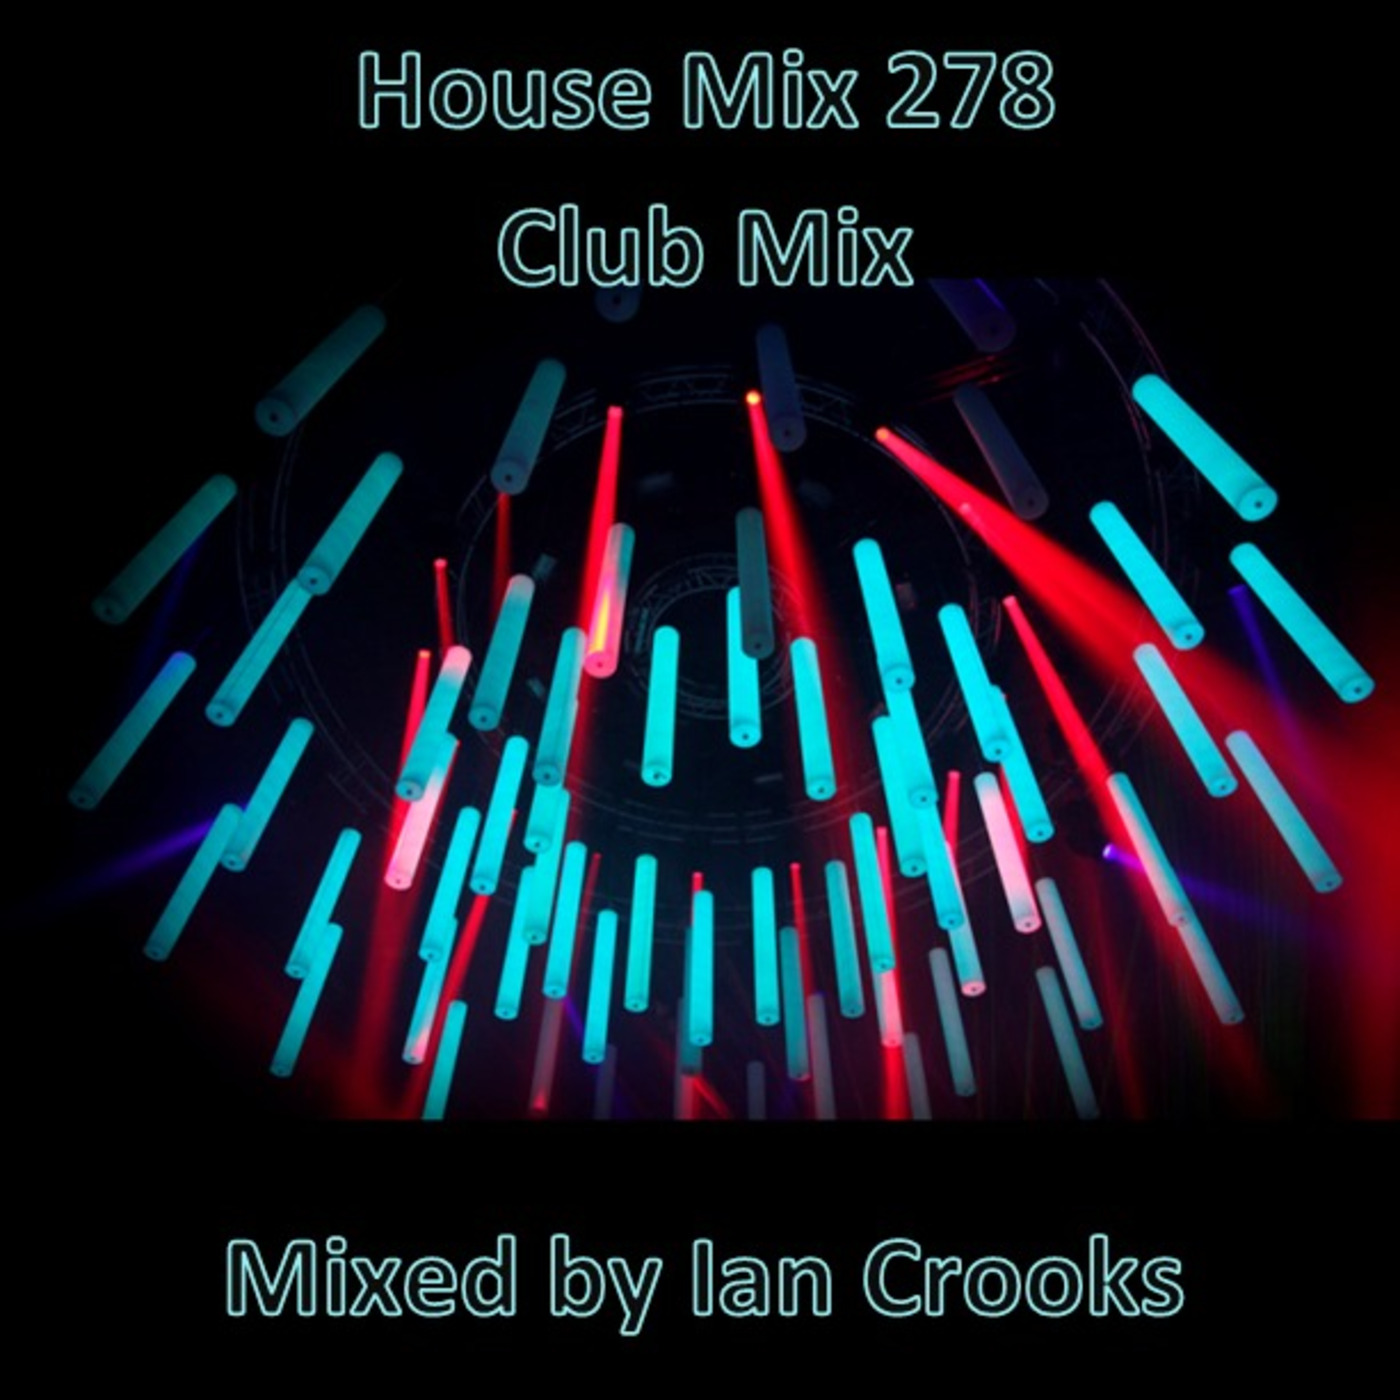 Ian Crooks Mix 278 (Club Mix)